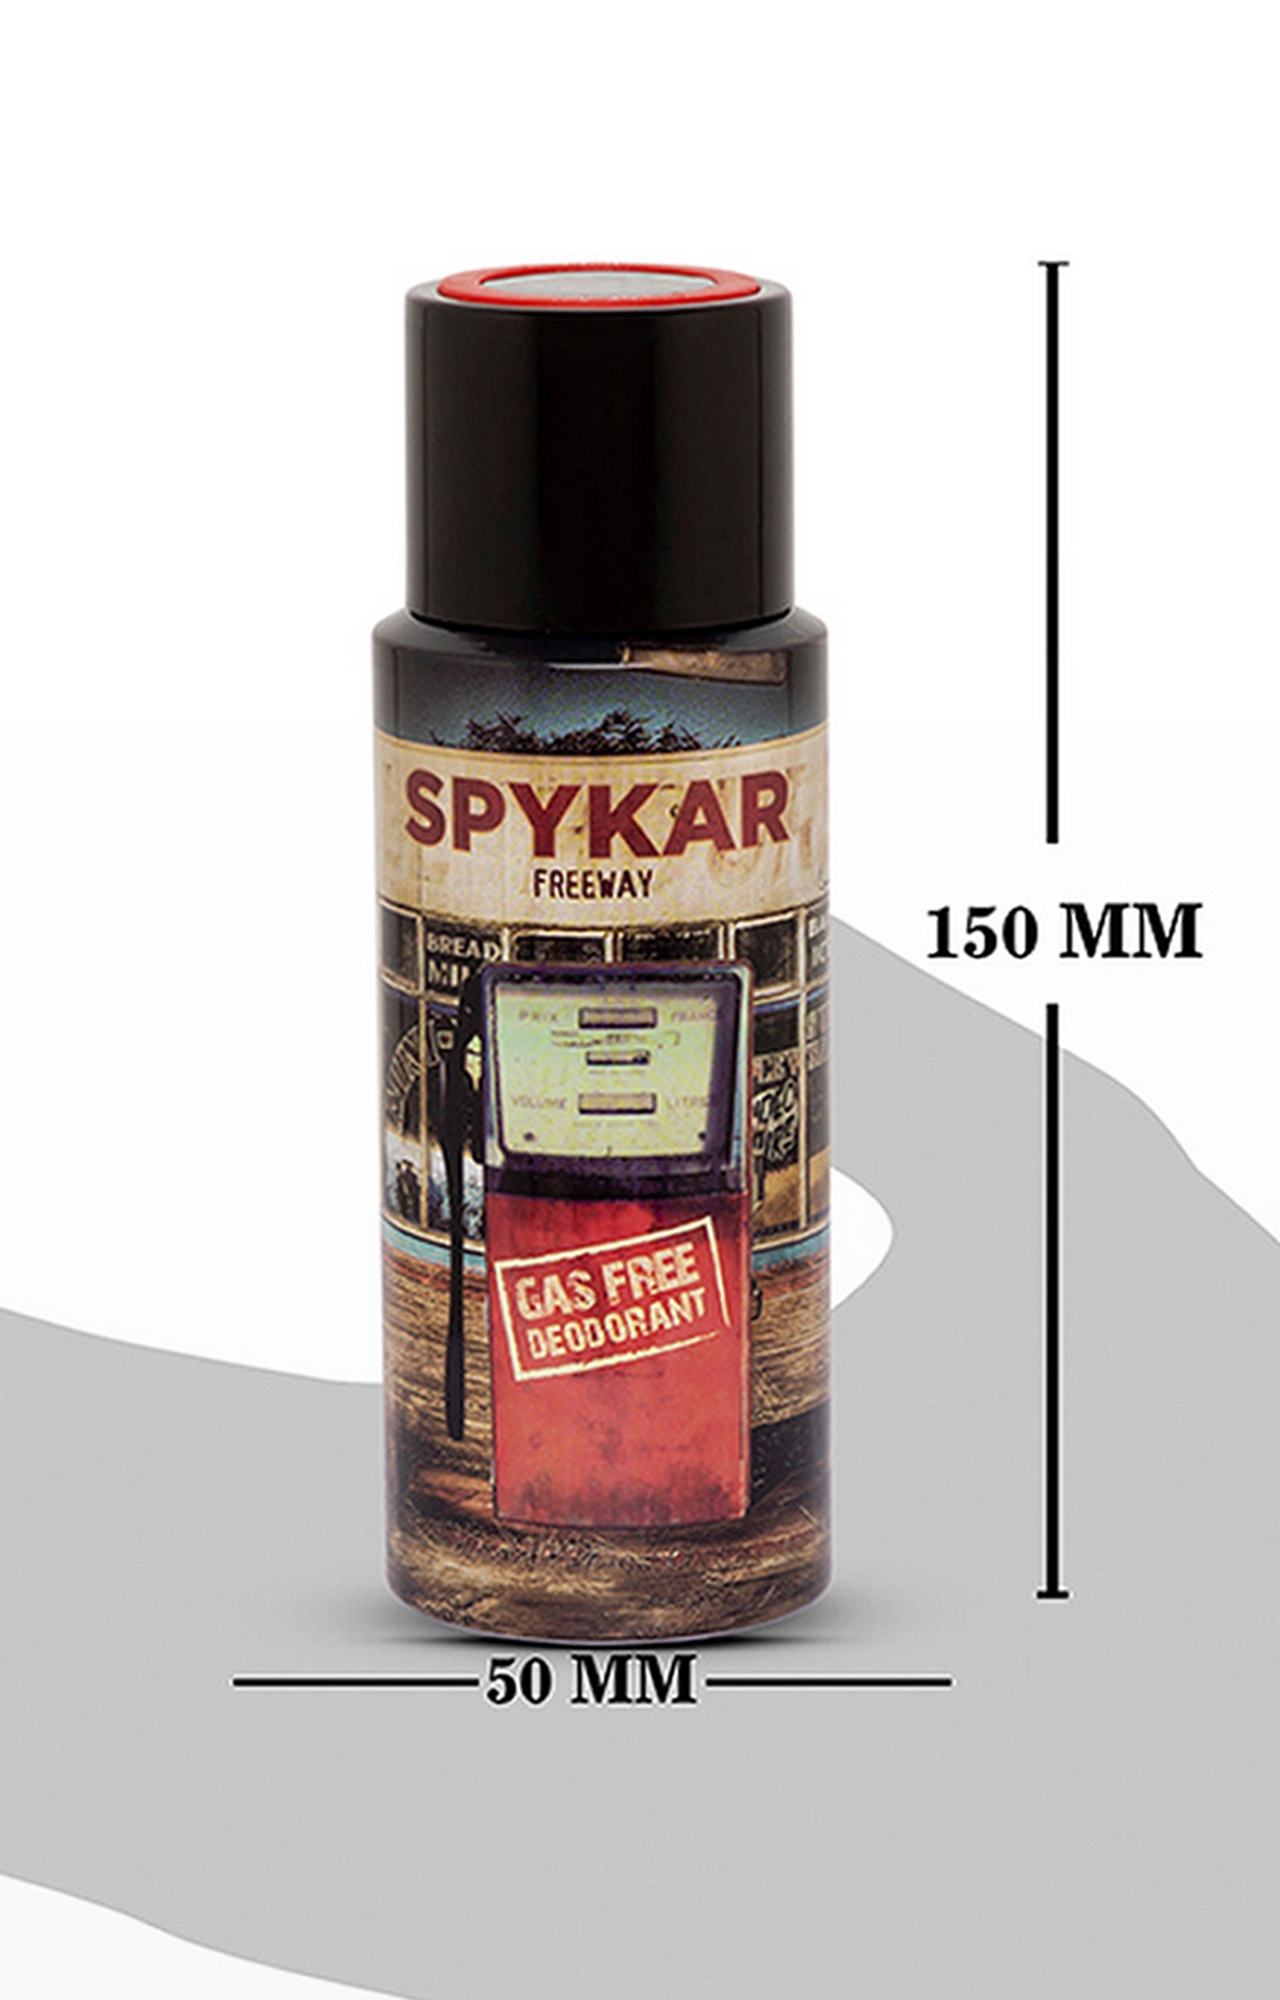 spykar | Spykar Red Gas Free Deodorant 5